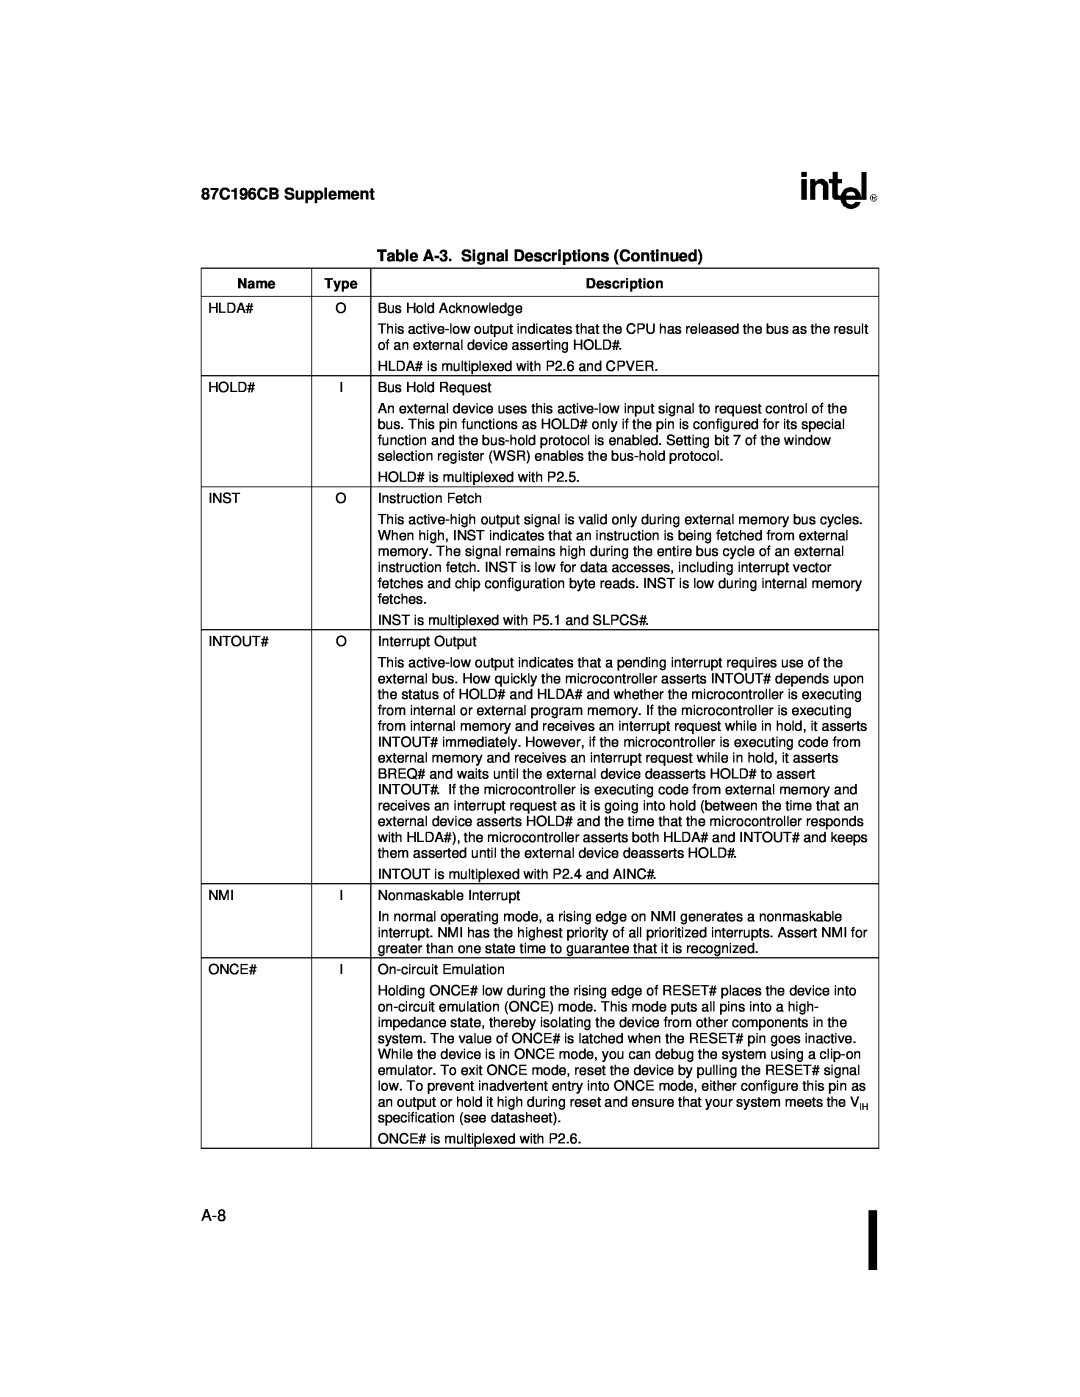 Intel 8XC196NT user manual 87C196CB Supplement, Table A-3. Signal Descriptions Continued 